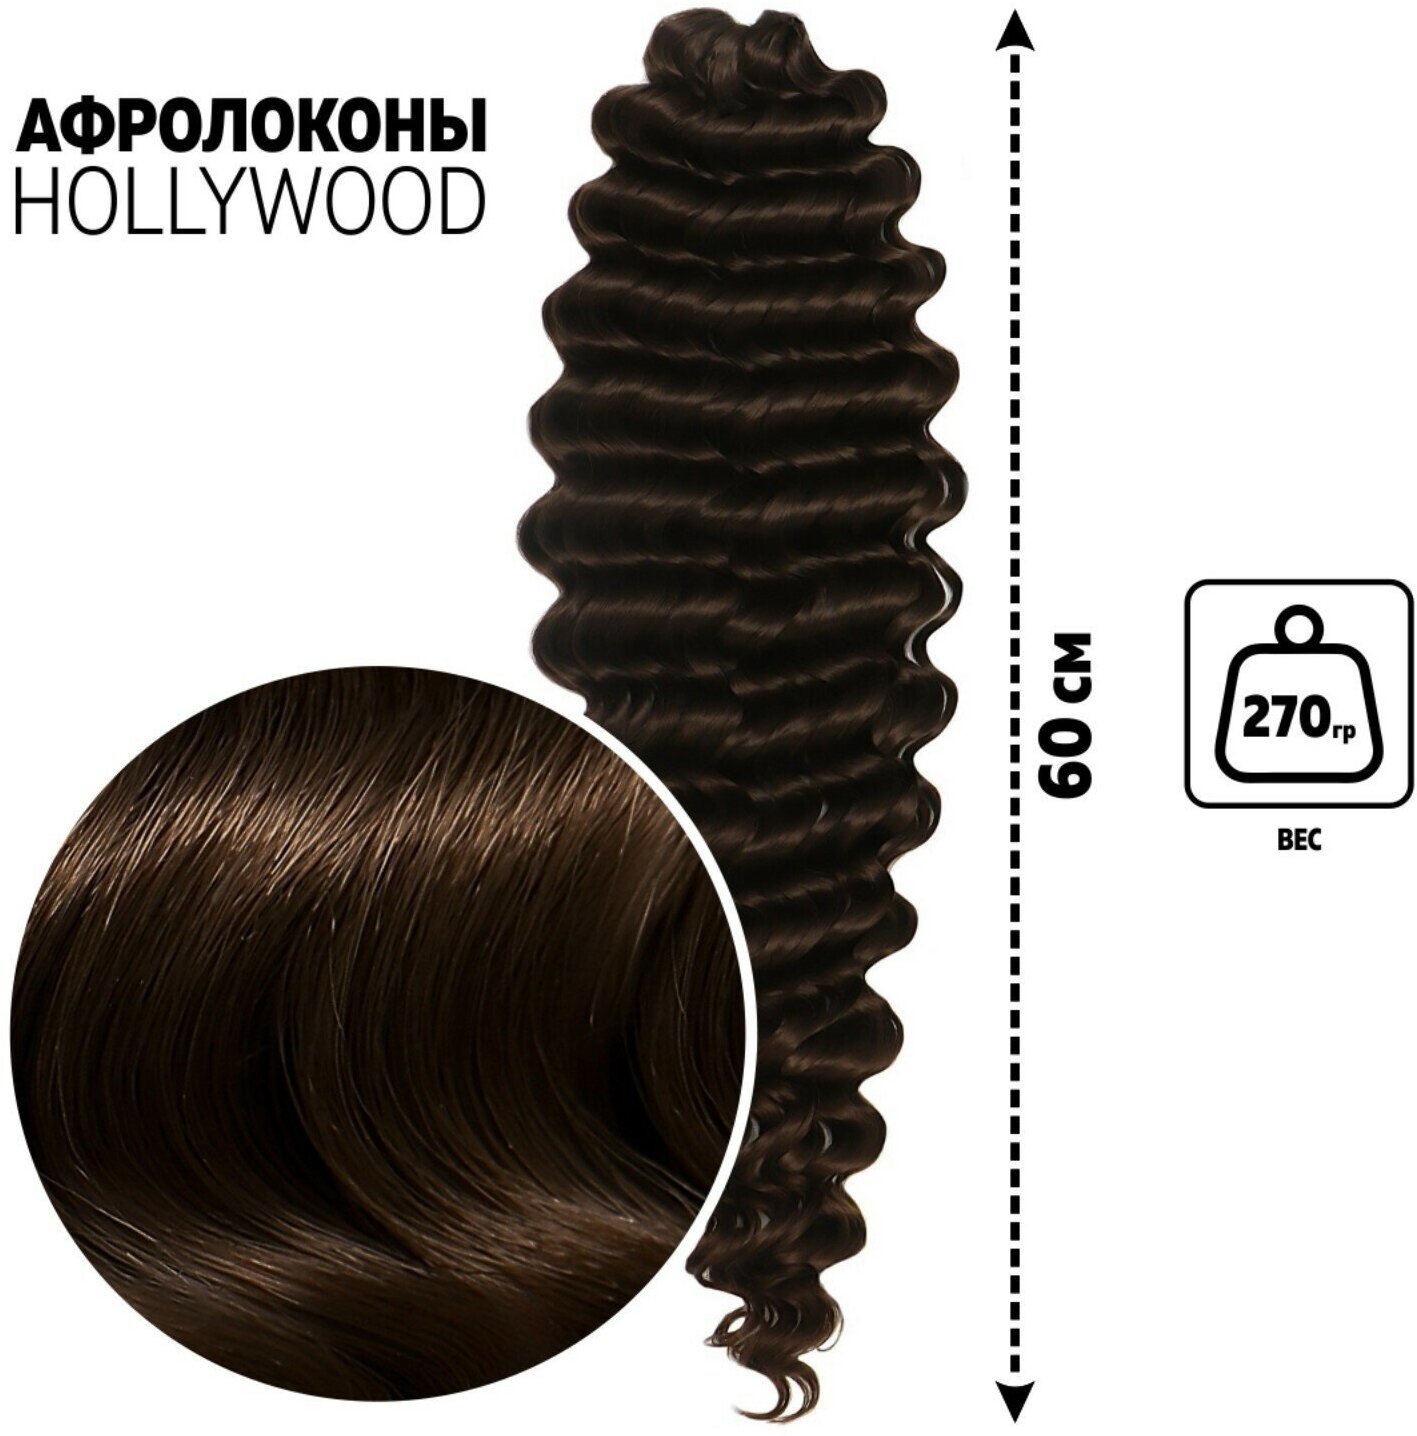 Голливуд Афролоконы, 60 см, 270 гр, цвет тёмно-русый/тёмный шоколад HKB8/6К (Катрин) (1шт.)